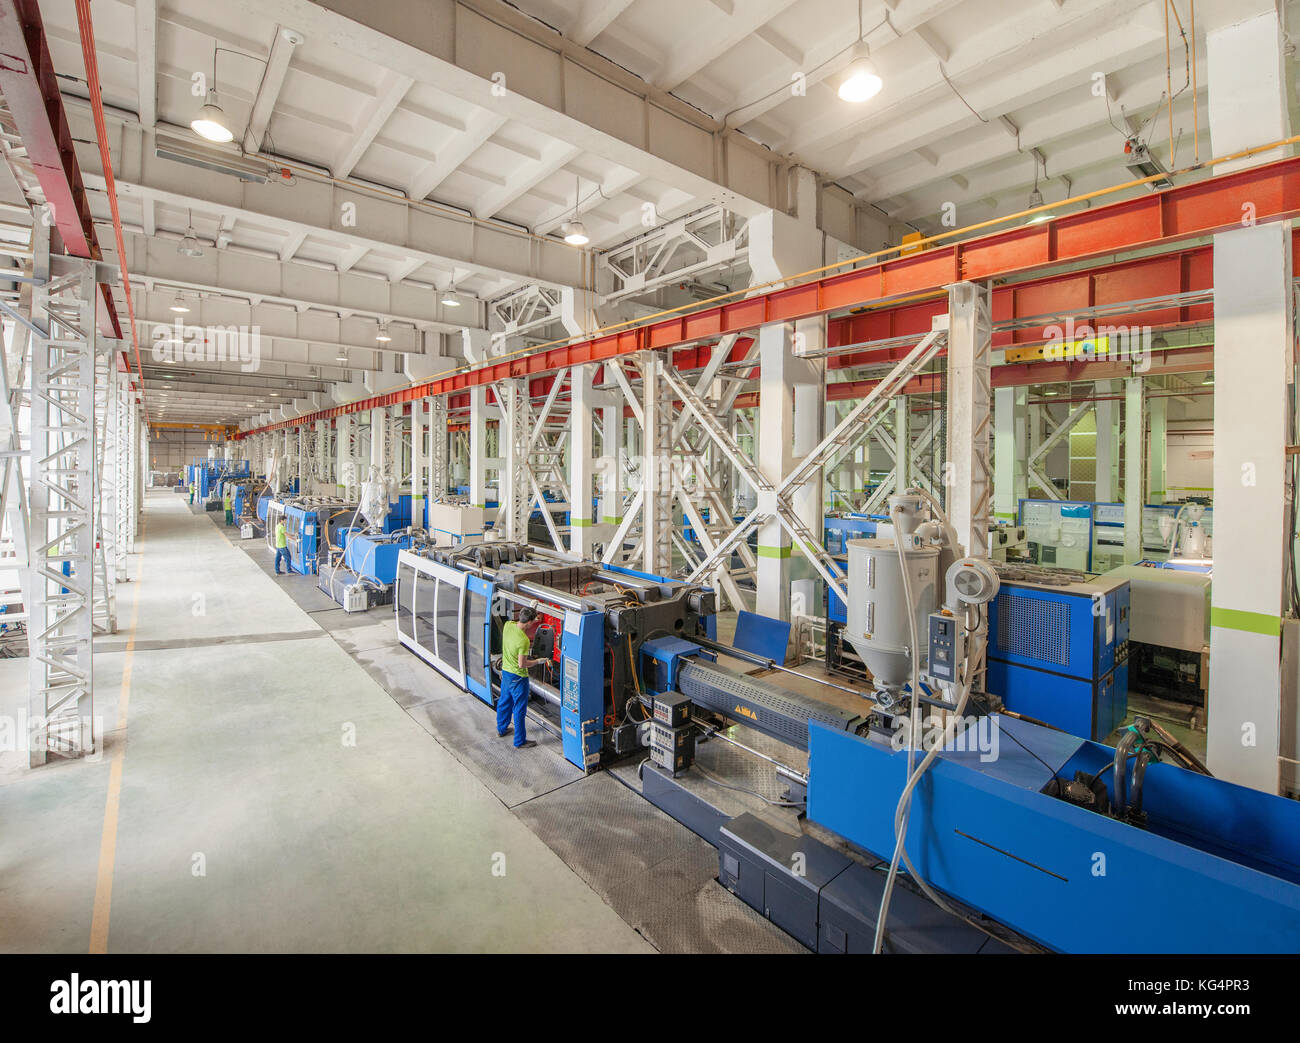 Industrielle Spritzgussmaschine Maschine für die Herstellung von Kunststoffteilen mit Polymeren, die in der Verwaltung der Arbeitnehmer Stockfoto